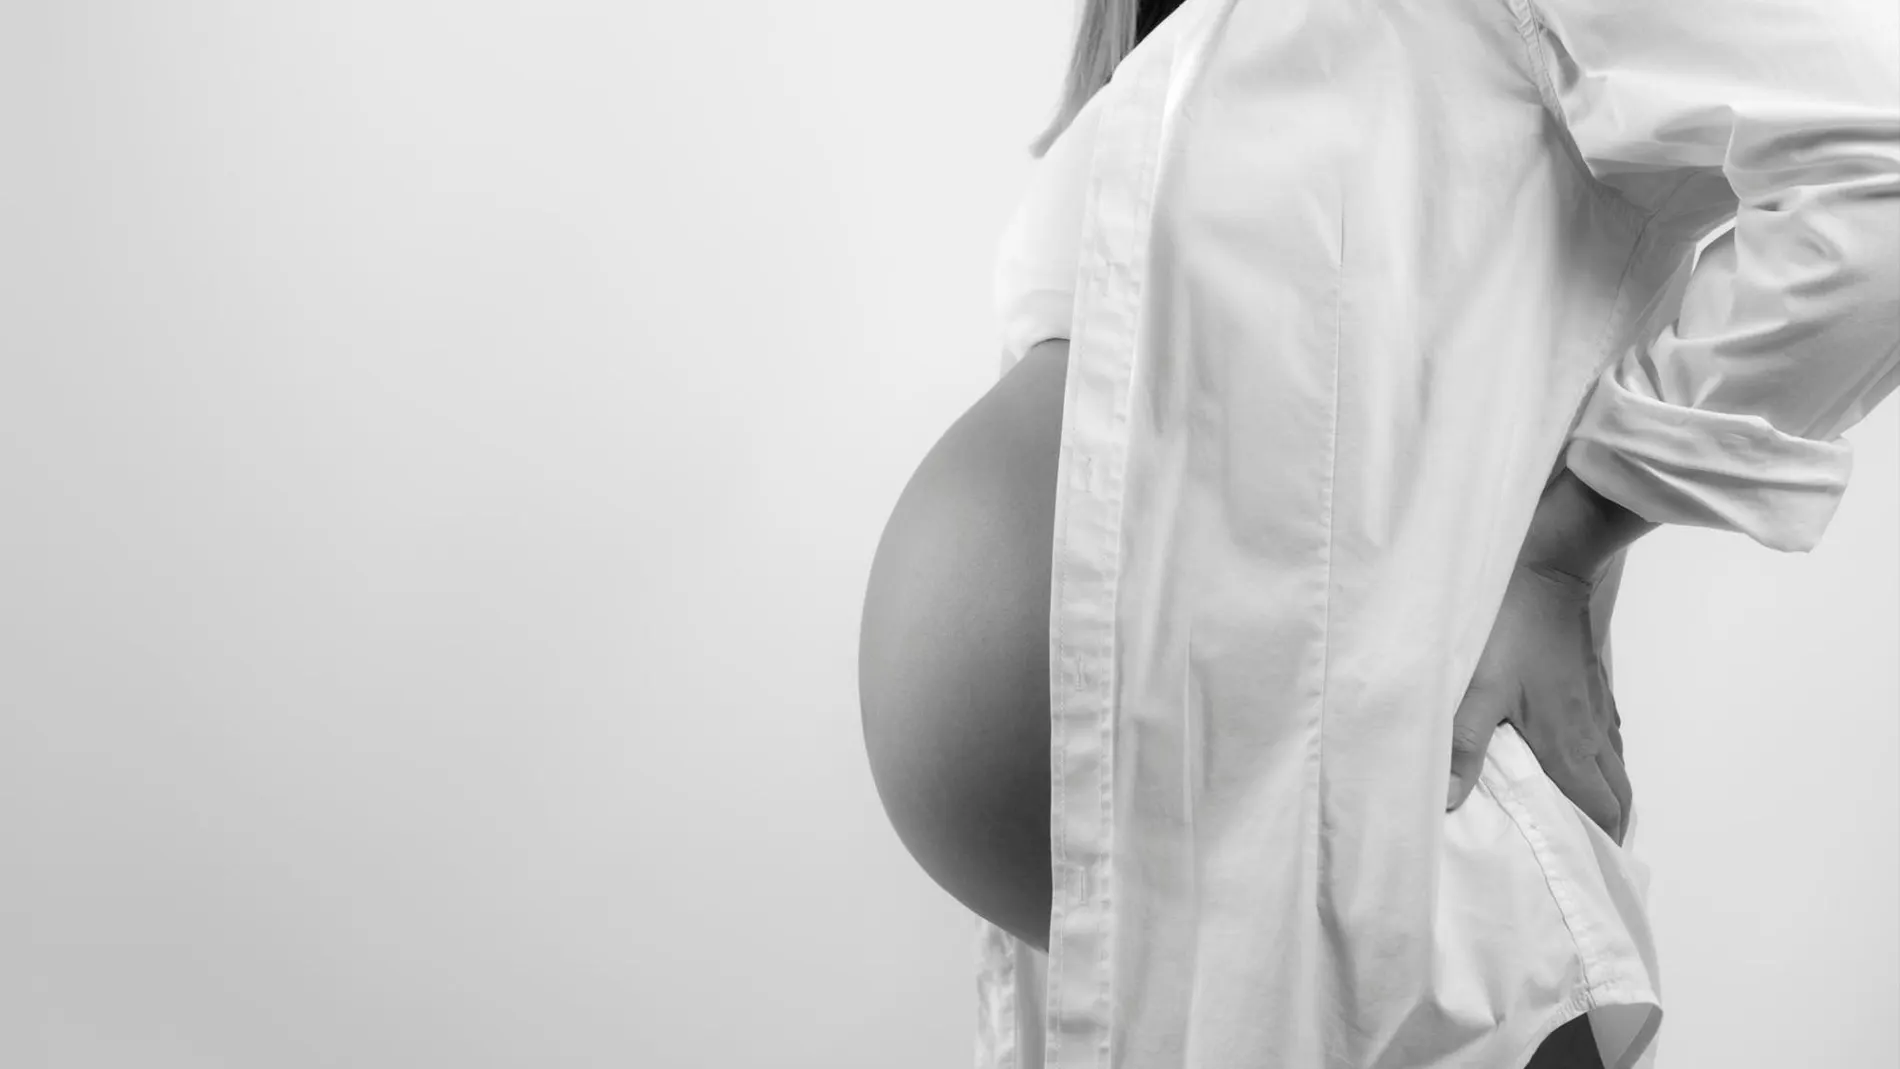 Alrededor de un 86% de las mujeres embarazadas consumen algún medicamento durante los nueves meses de gestación, siendo el promedio de fármacos consumidos por mujer embarazada de 2,9.